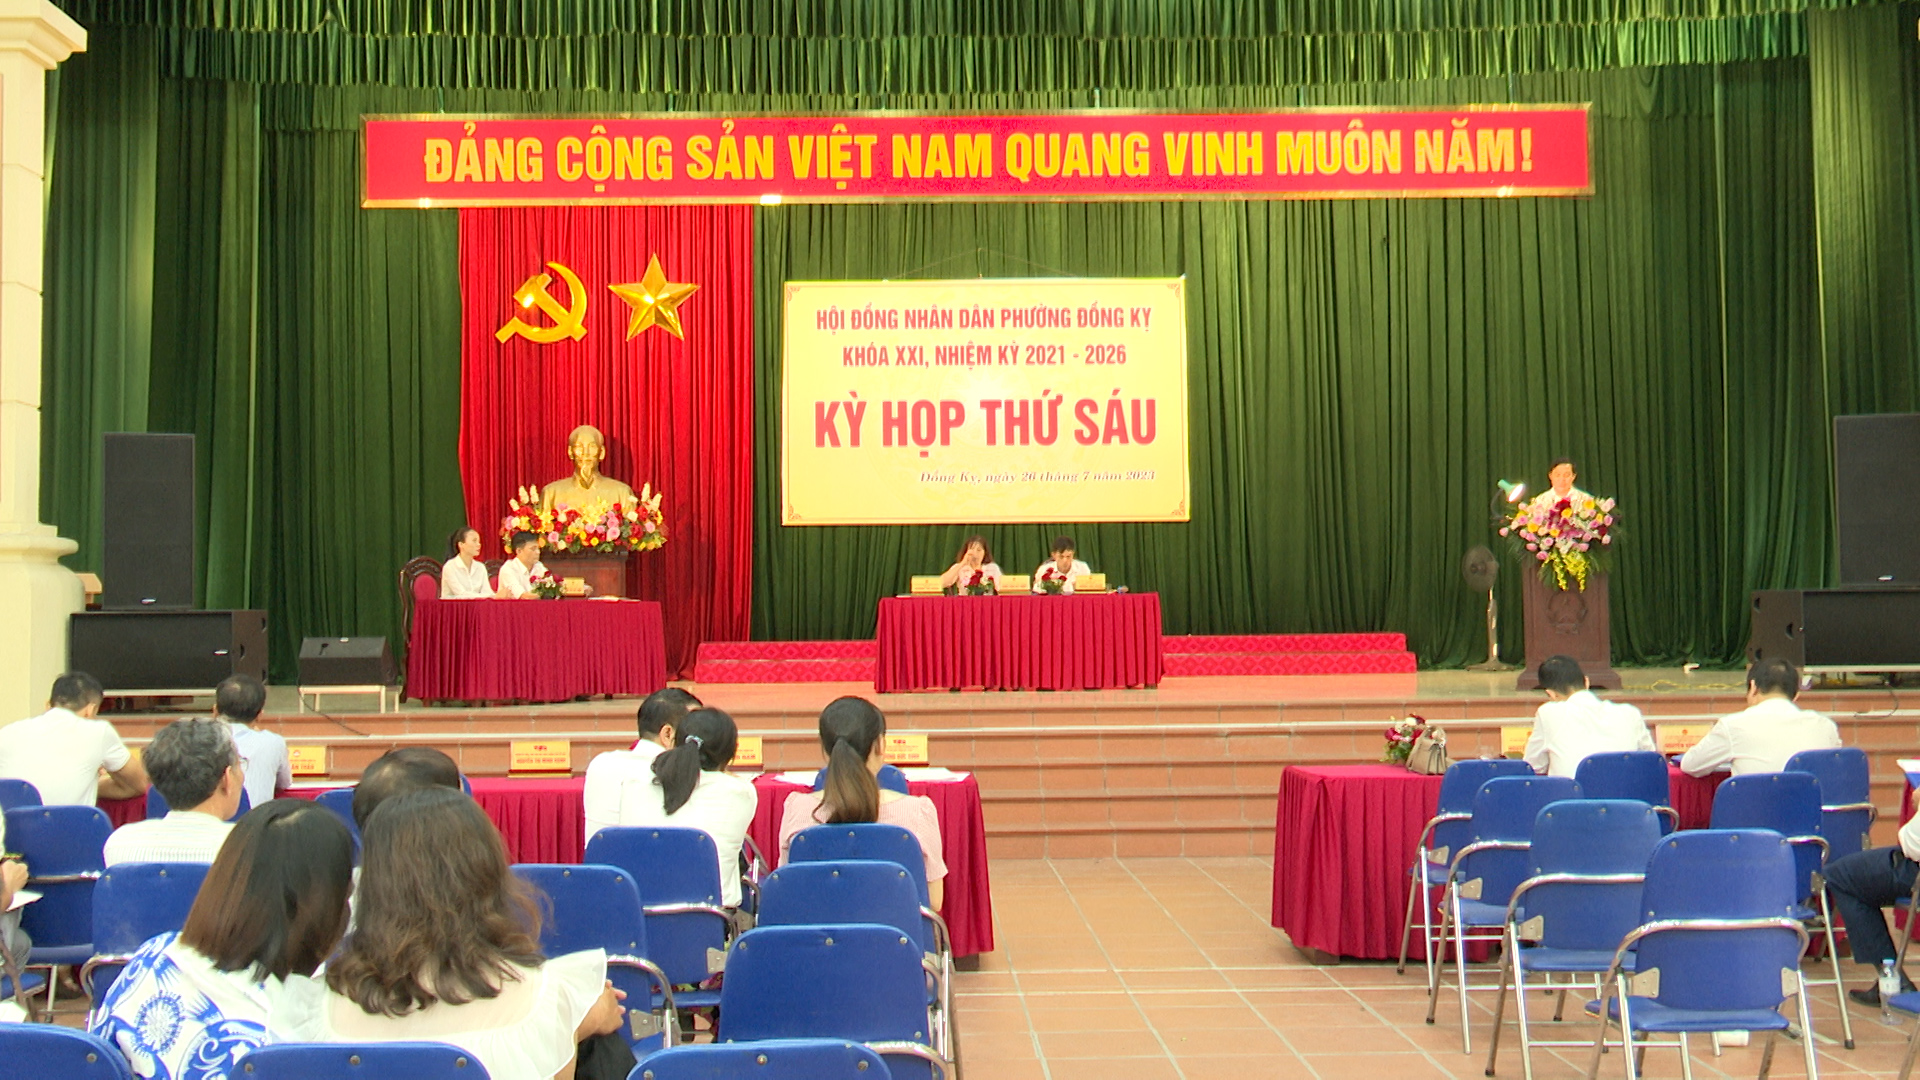 HĐND phường Đồng Kỵ khóa XXI tổ chức kỳ họp thứ 6